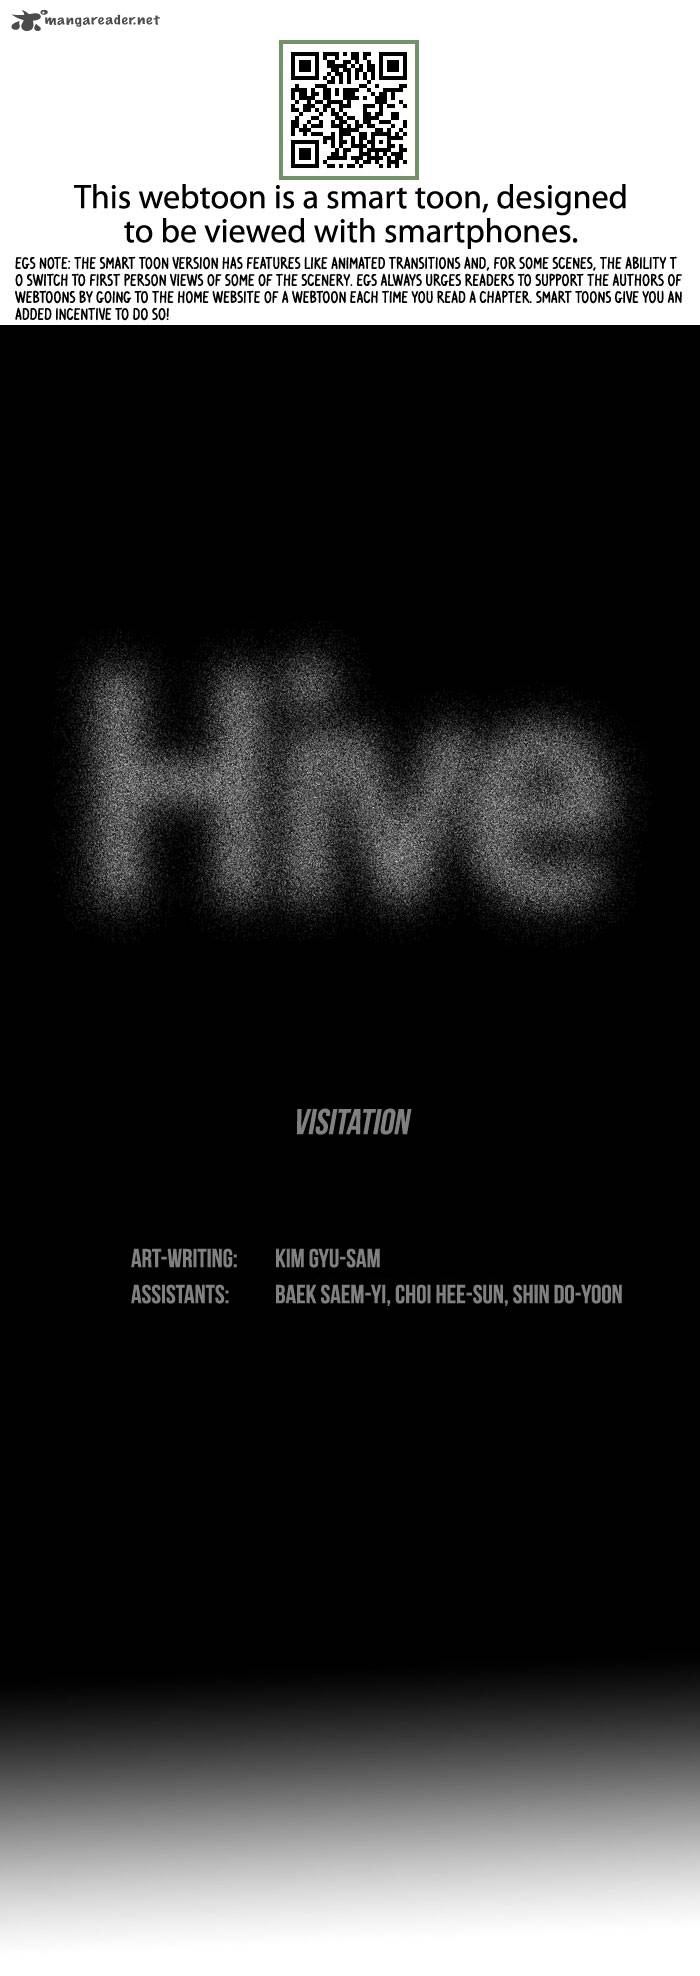 hive_4_2